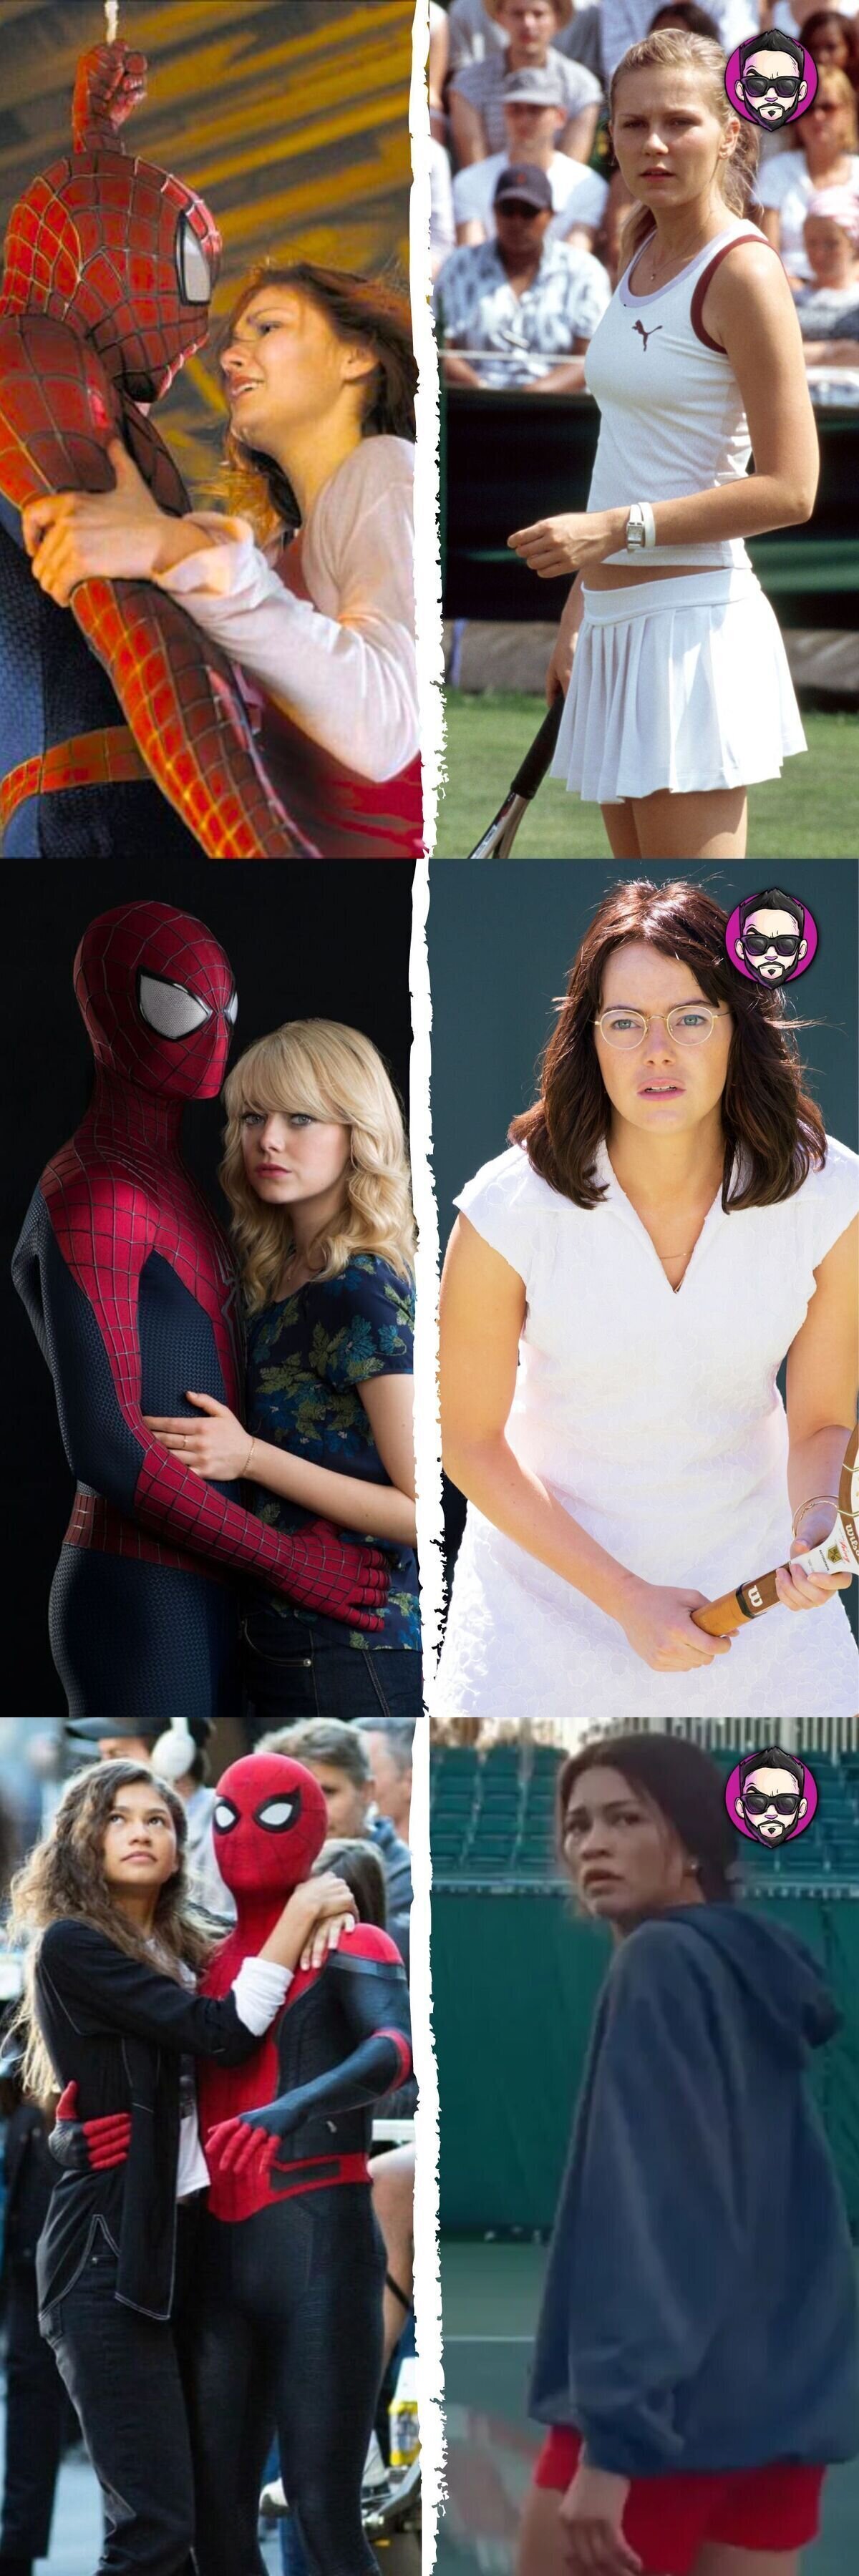 Dato curioso: Las actrices que interpretaron a una pareja principal de SpiderMan terminaron protagonizando una película de tenis